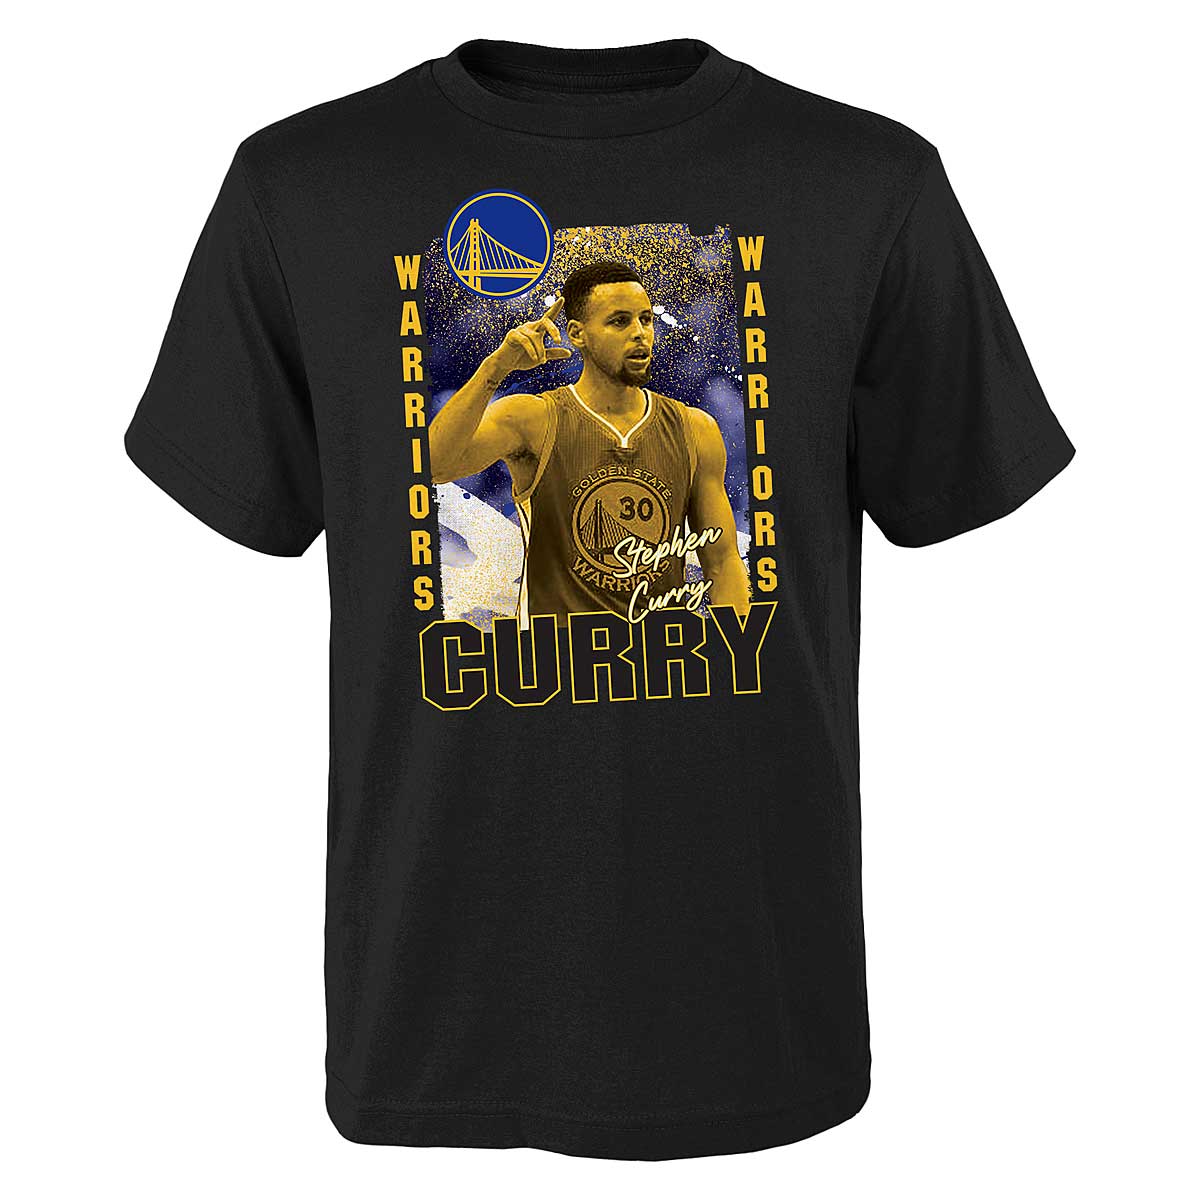 Outerstuff Kids Nba Golden State Warriors Celebration T-Shirt Stephen Curry Kids, Black